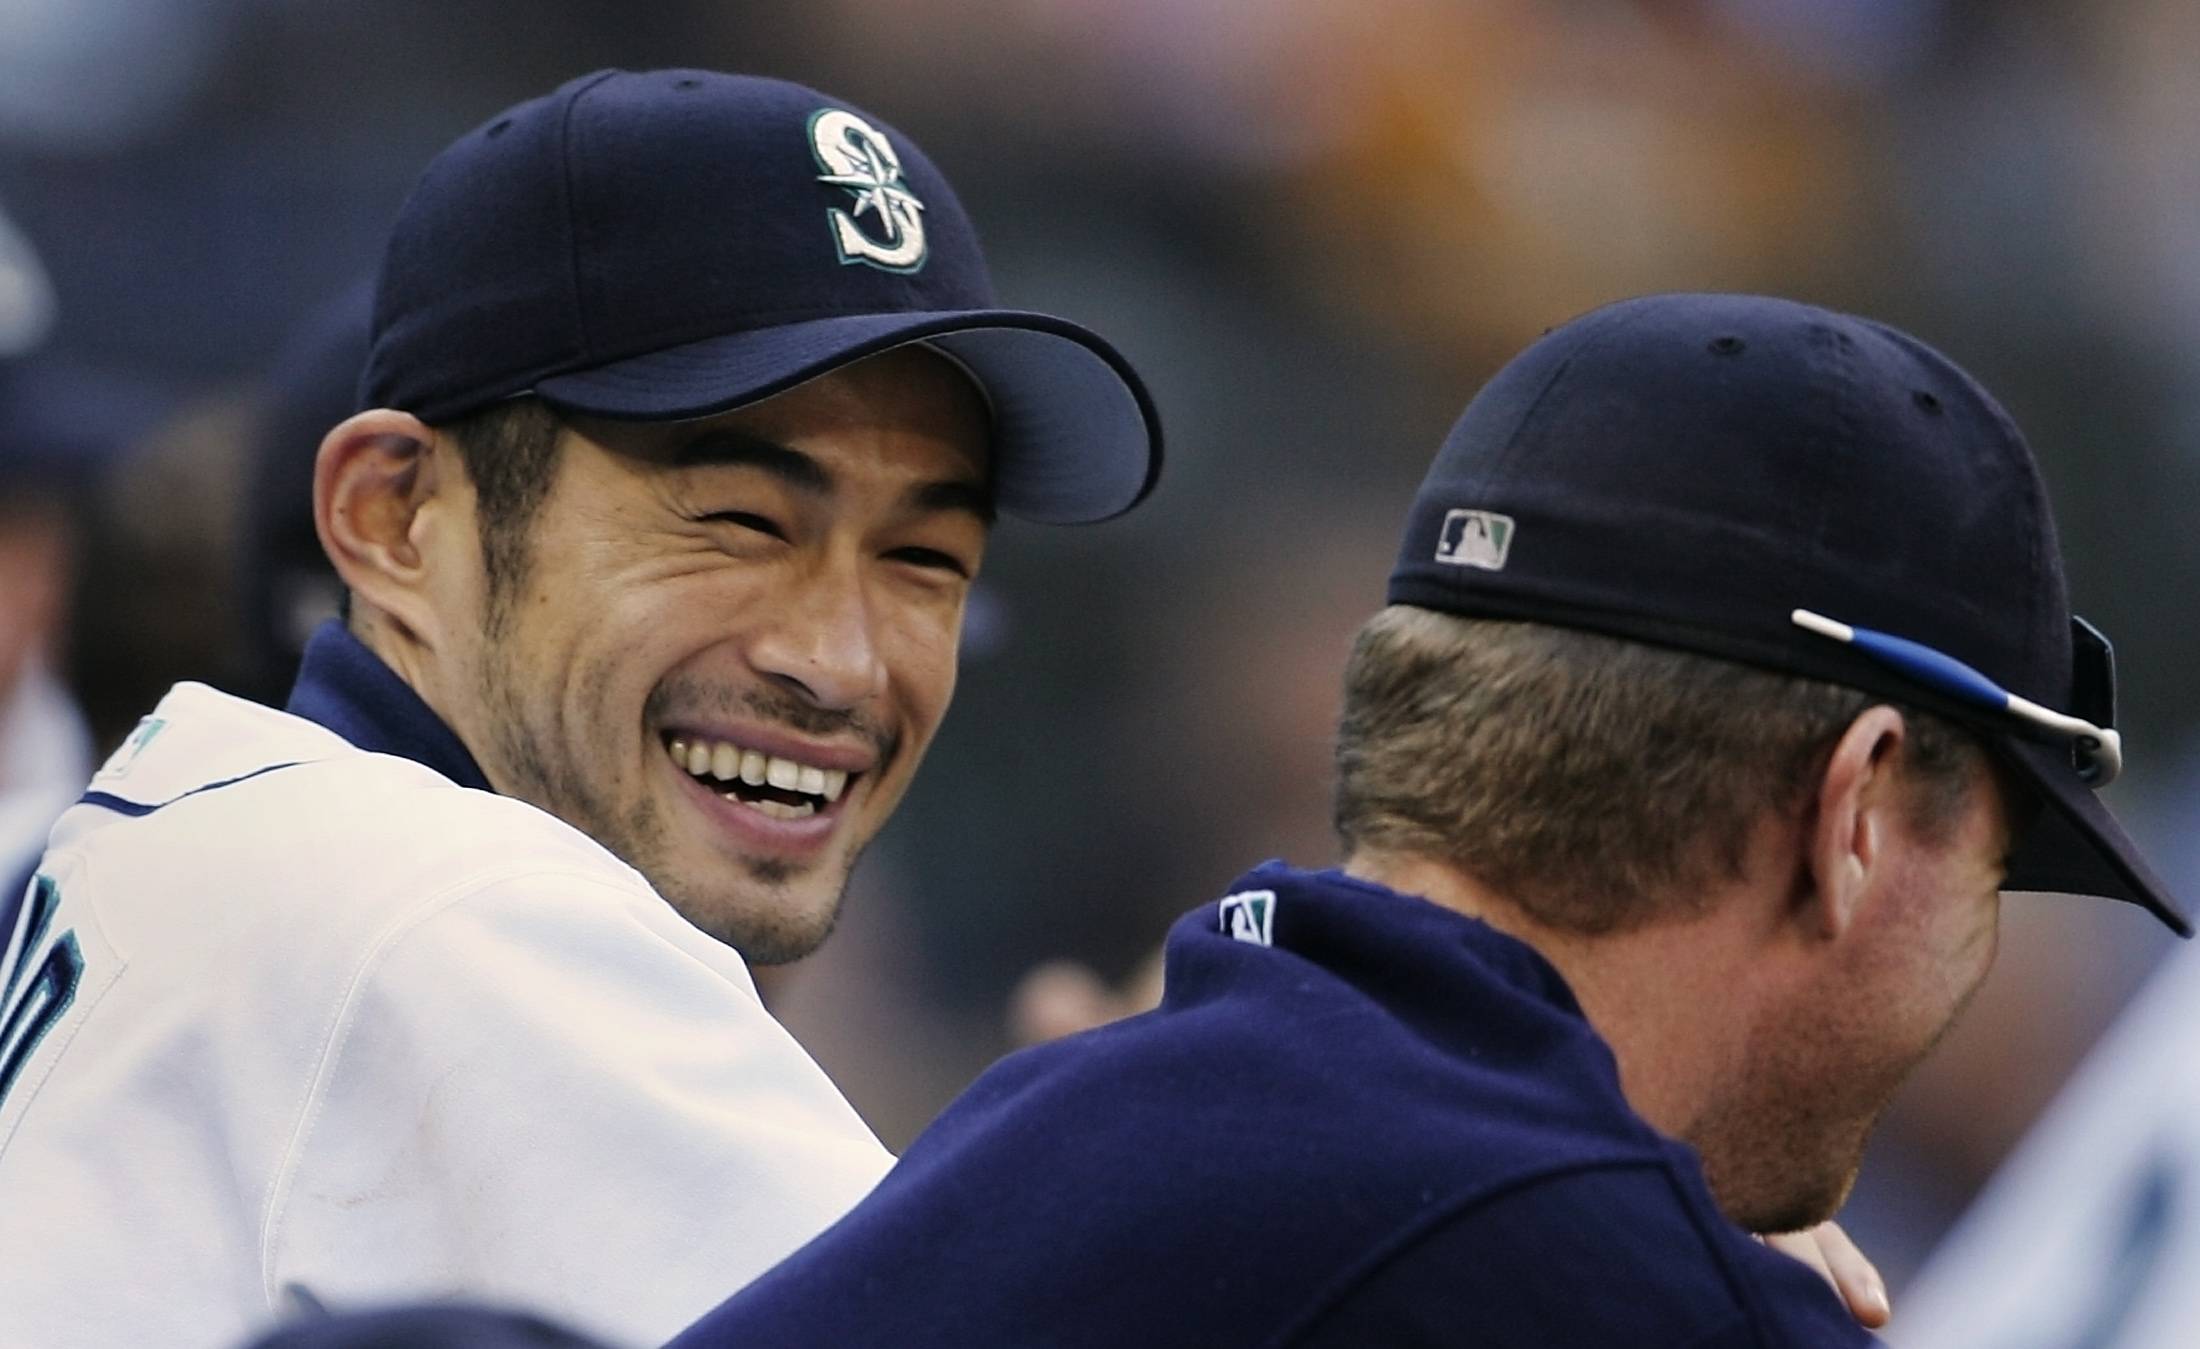 Ichiro Suzuki gets first off day since joining Yankees 